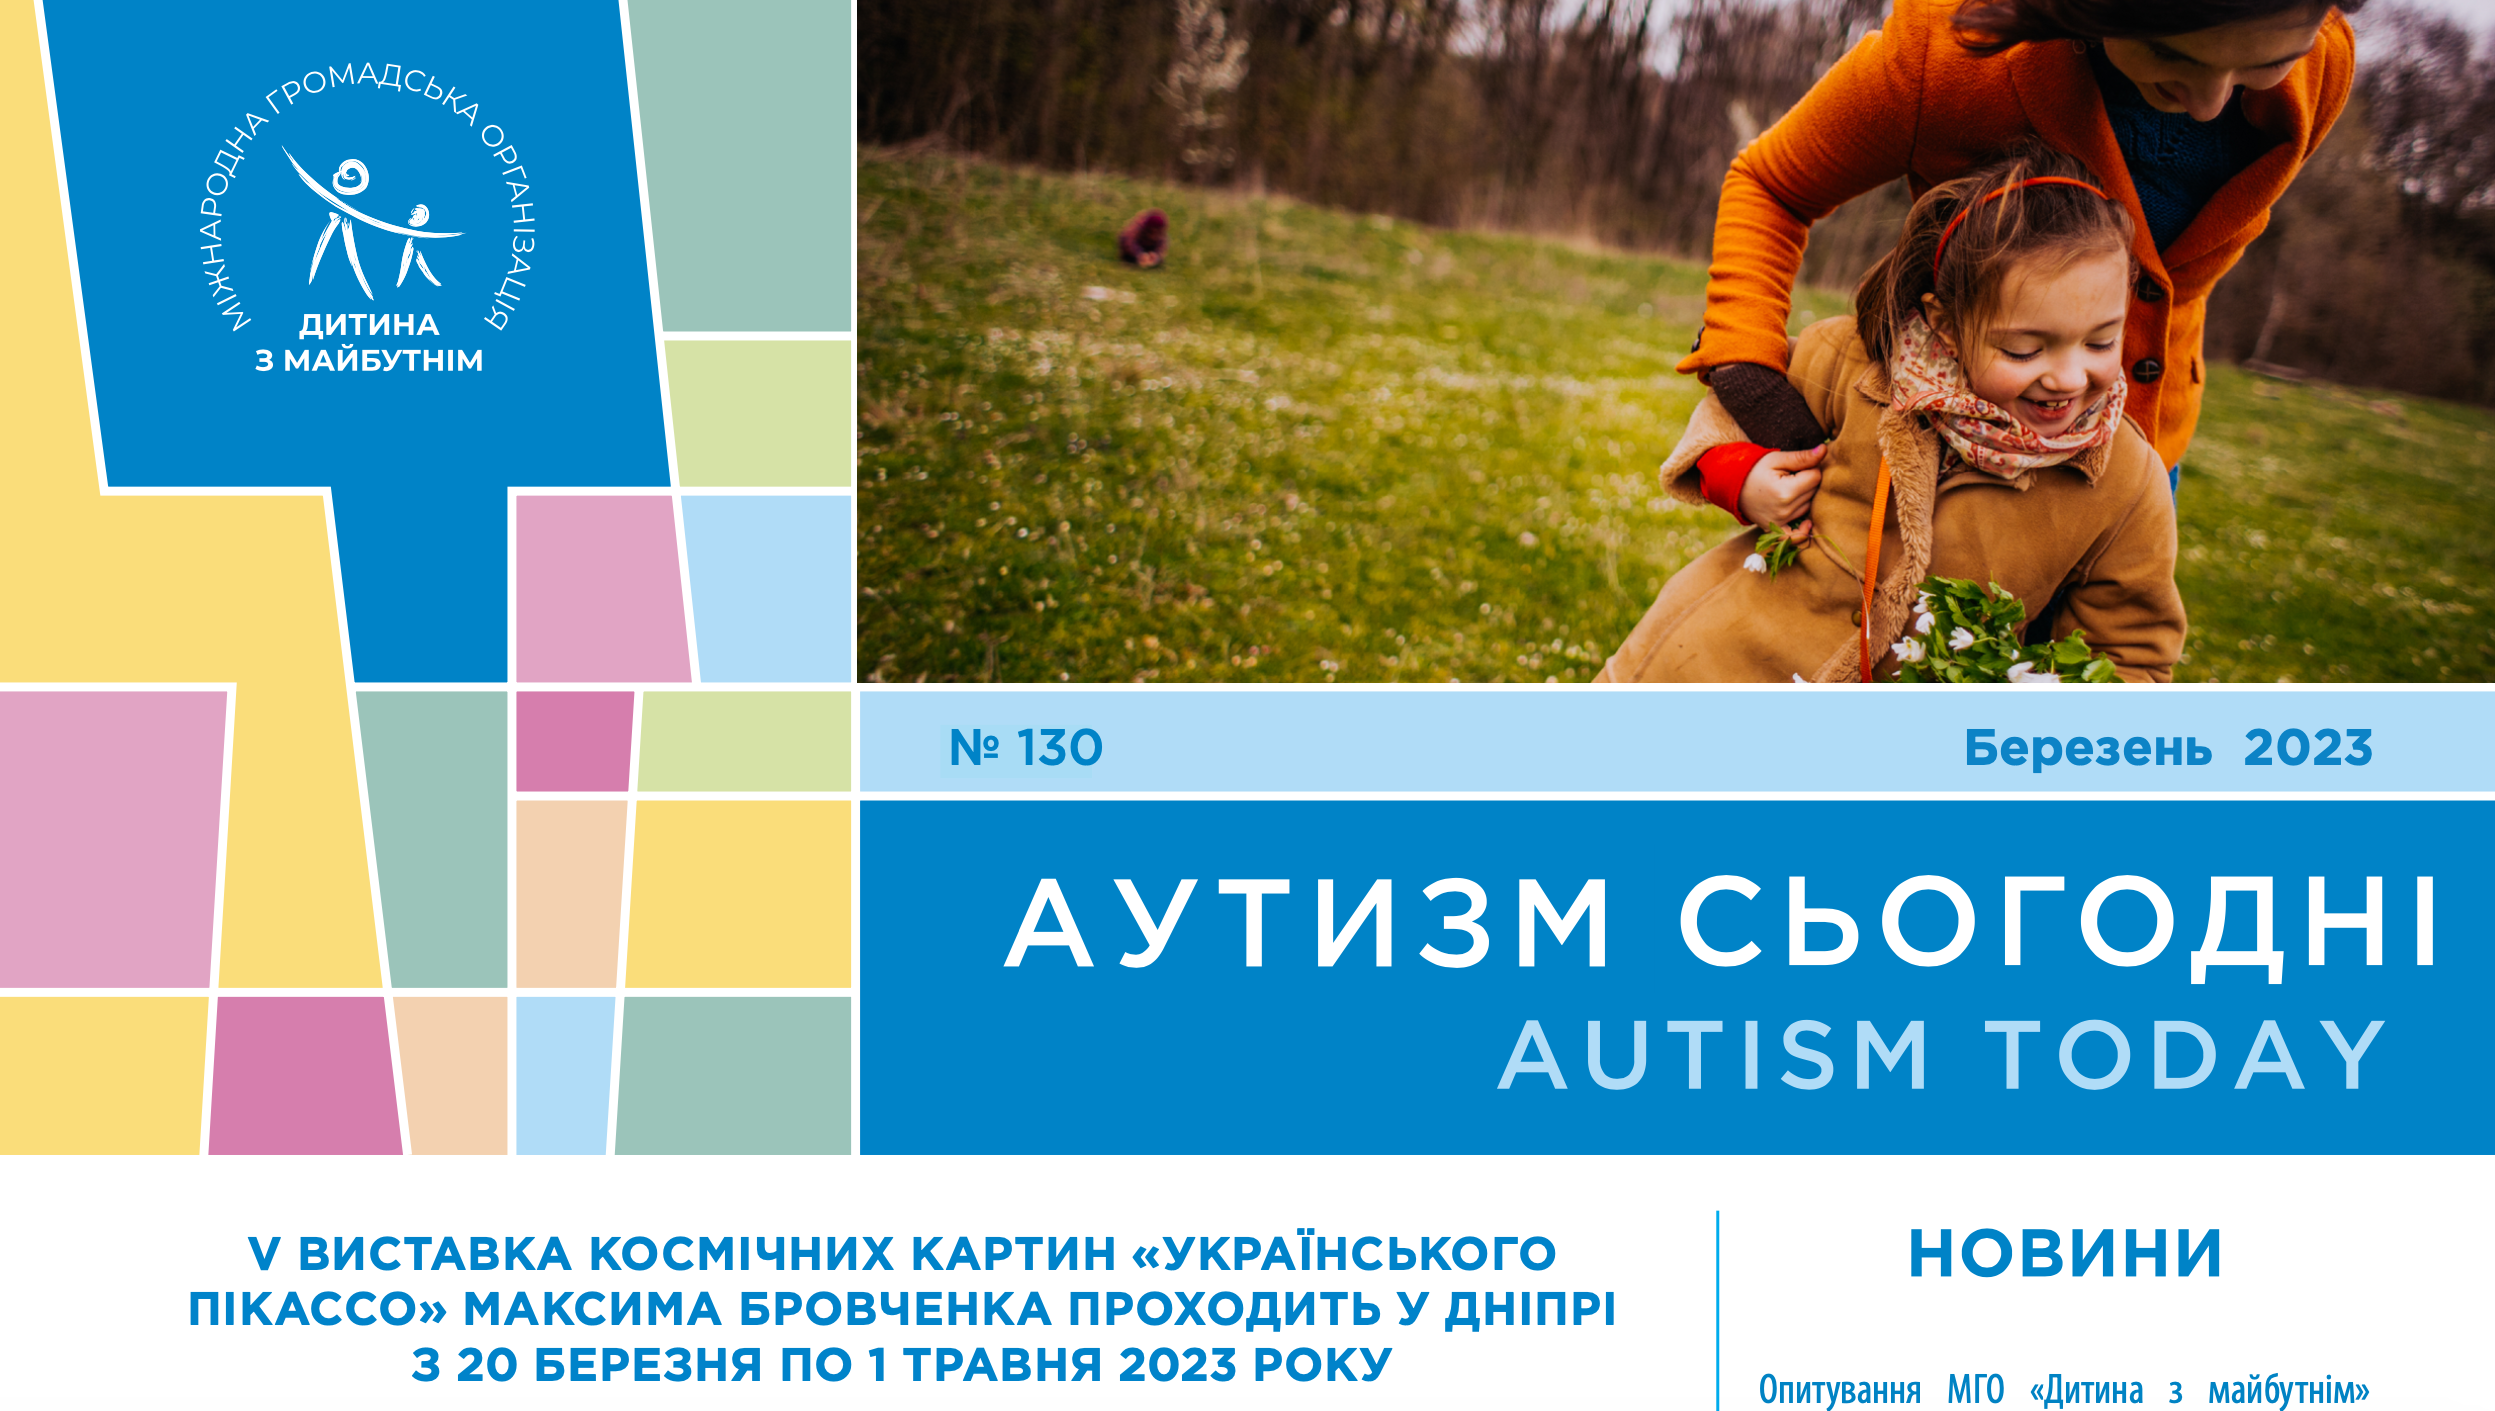 V виставка картин Максима Бровченка, зв’язок між інфекцією матері і аутизмом і щорічне опитування від МГО “Дитина з майбутнім” – на сторінках “Аутизм сьогодні” за березень 2023 року